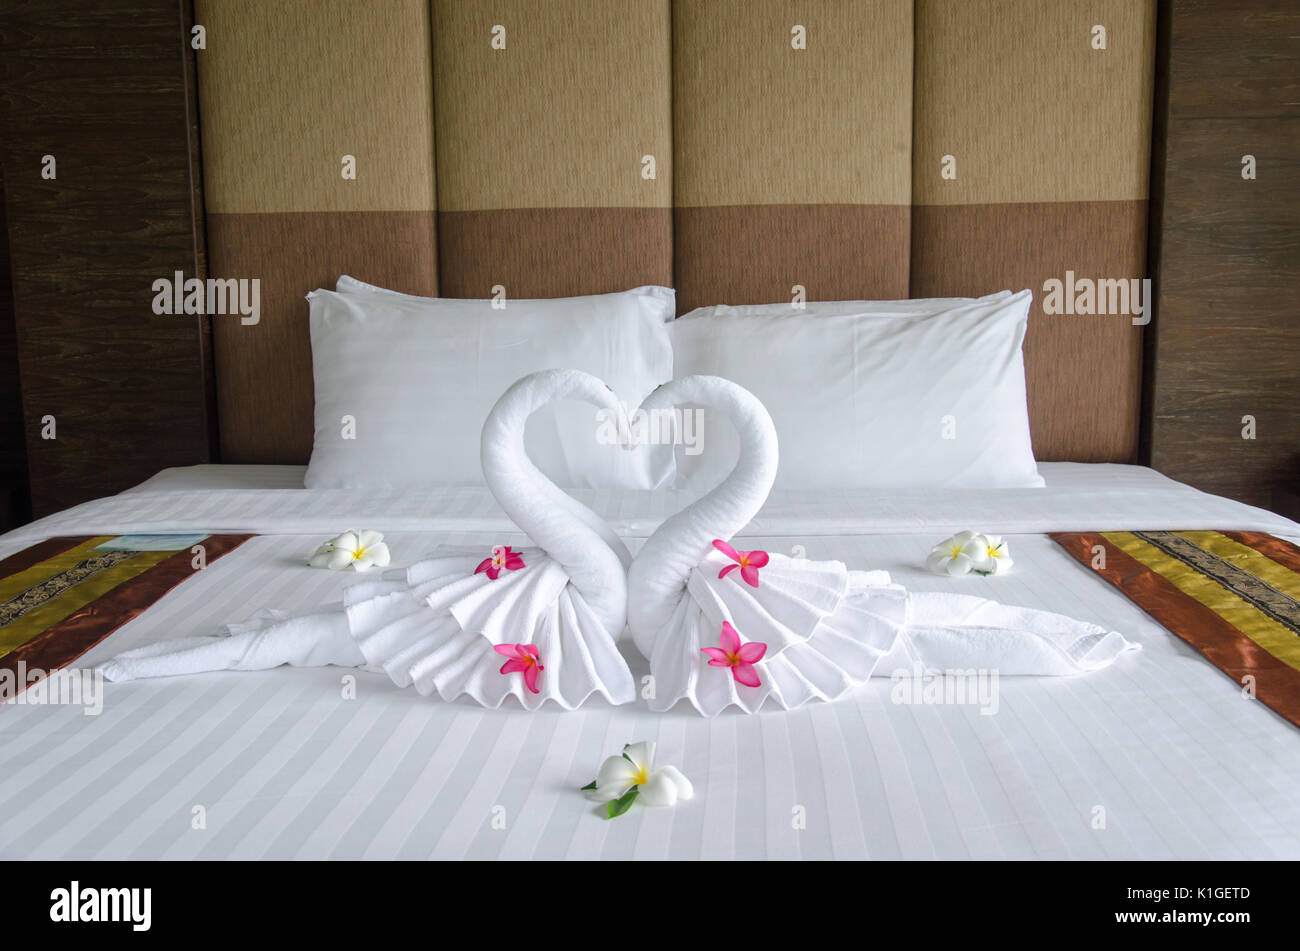 Swan Handtuch Dekoration Auf Dem Bett Im Schlafzimmer Innenraum Stockfotografie Alamy